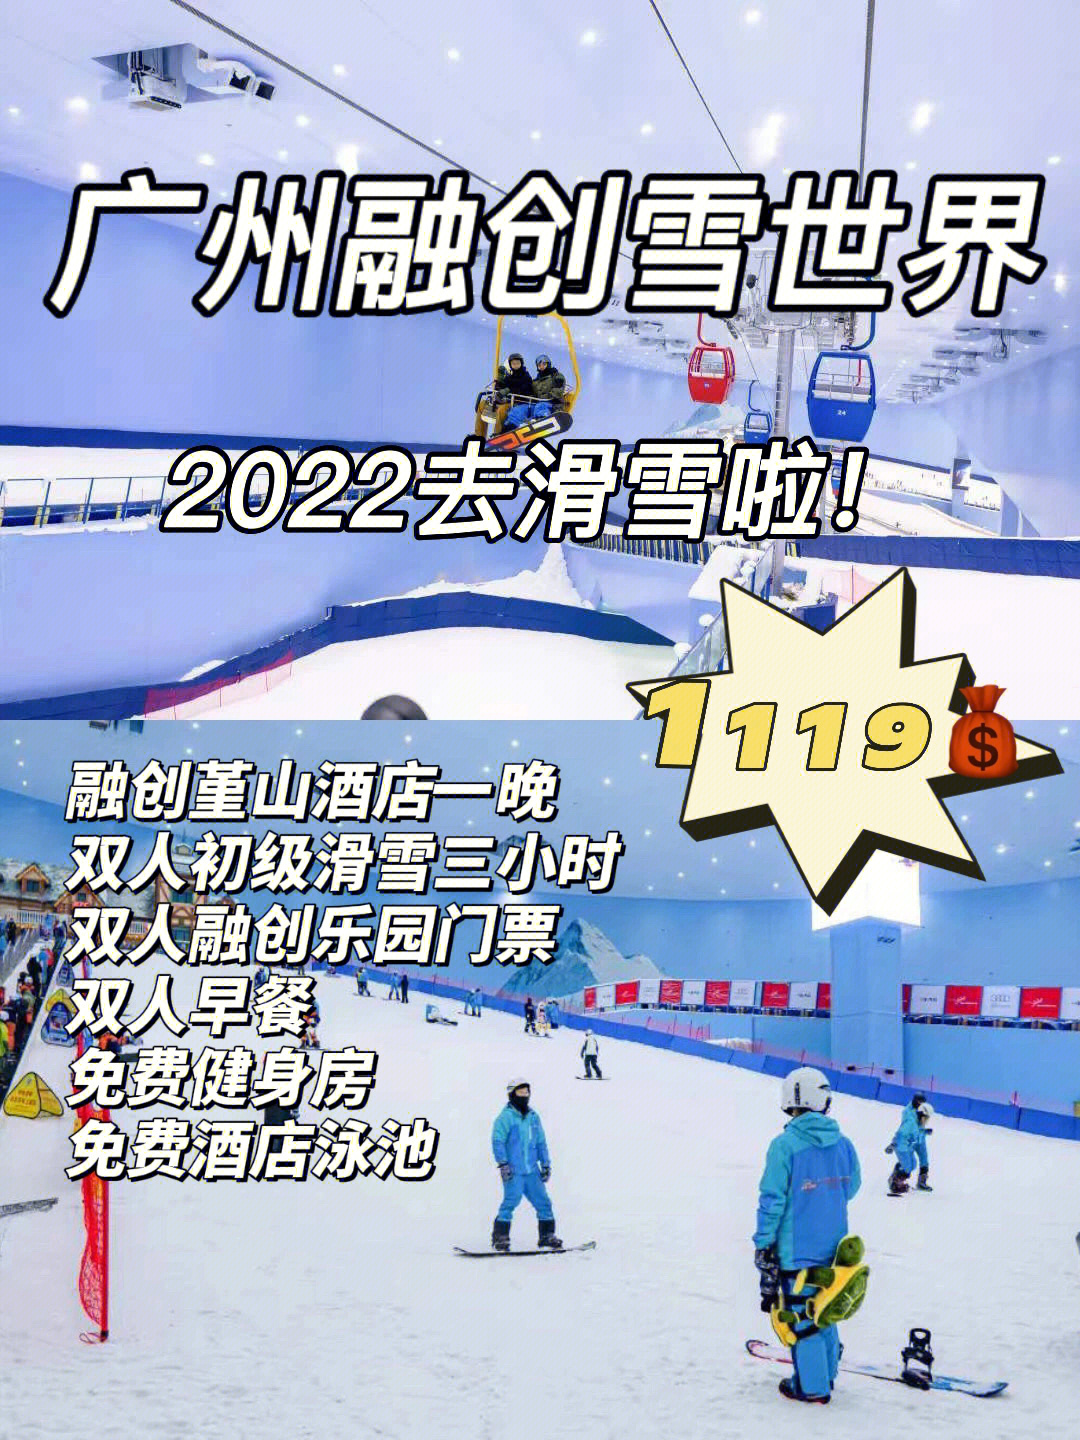 广州融创雪世界价目表图片